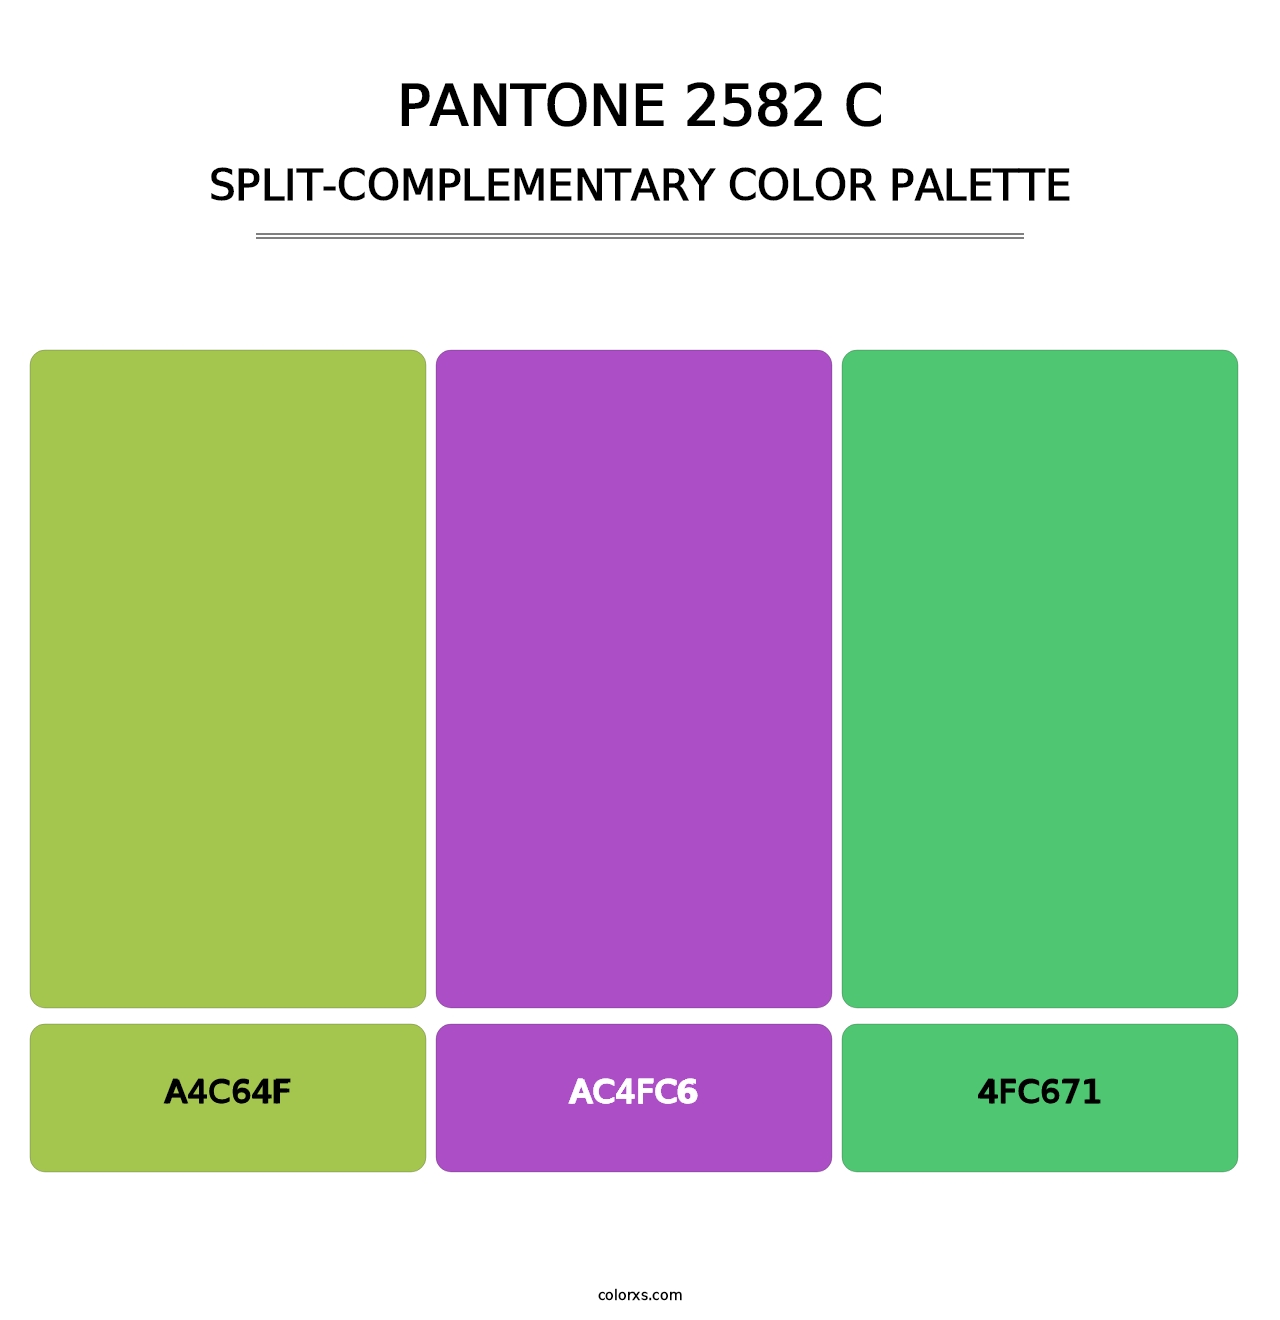 PANTONE 2582 C - Split-Complementary Color Palette